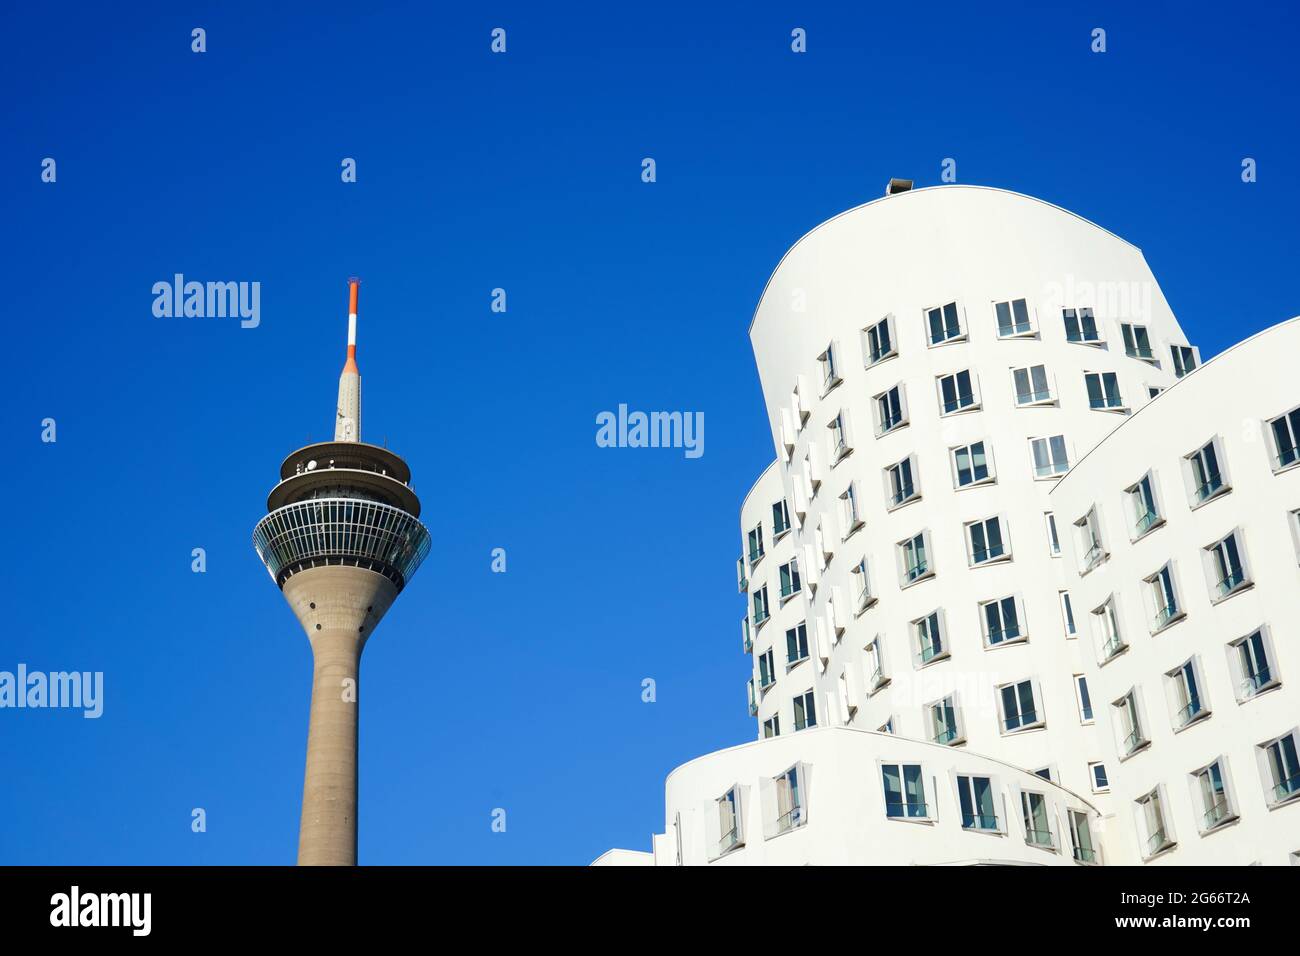 Weißes Gebäude des US-amerikanischen Stararchitekten Frank O. Gehry im Neuen Zollhof, Medienhafen und dem Düsseldorfer Wahrzeichen Rheinturm. Stockfoto